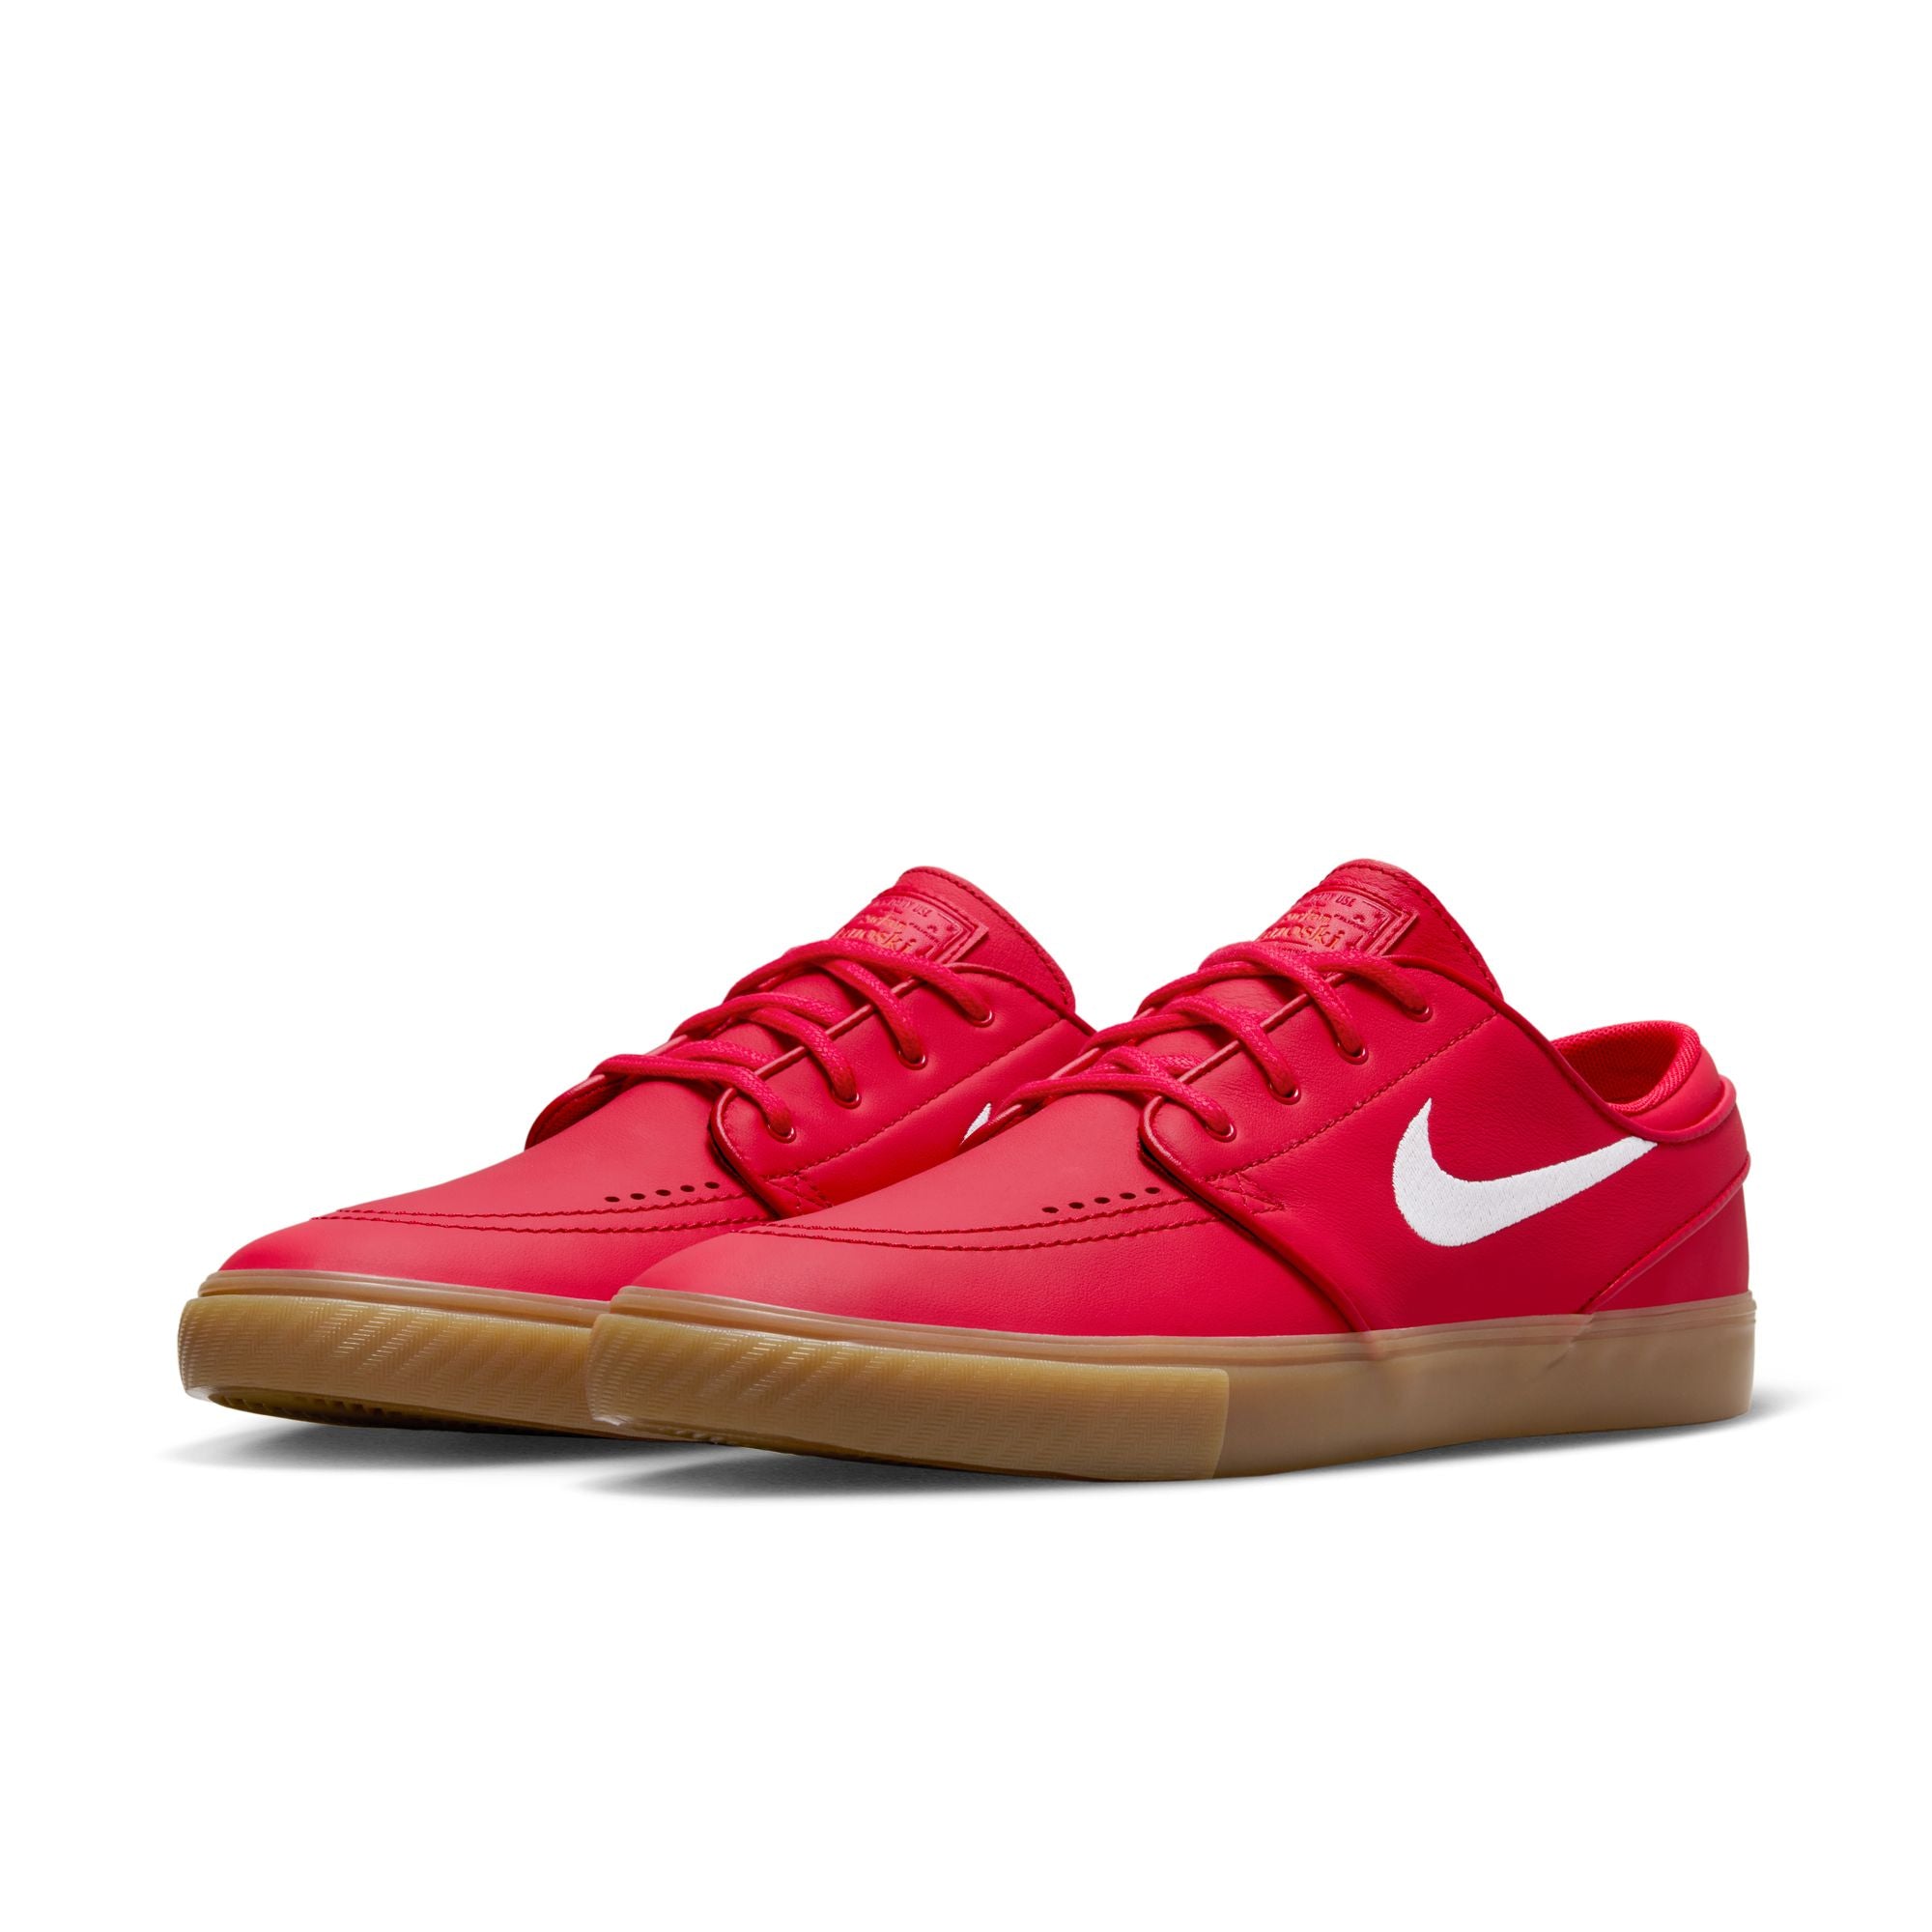 Nike SB ISO Janoski OG+ Shoes - University Red/White-Gum